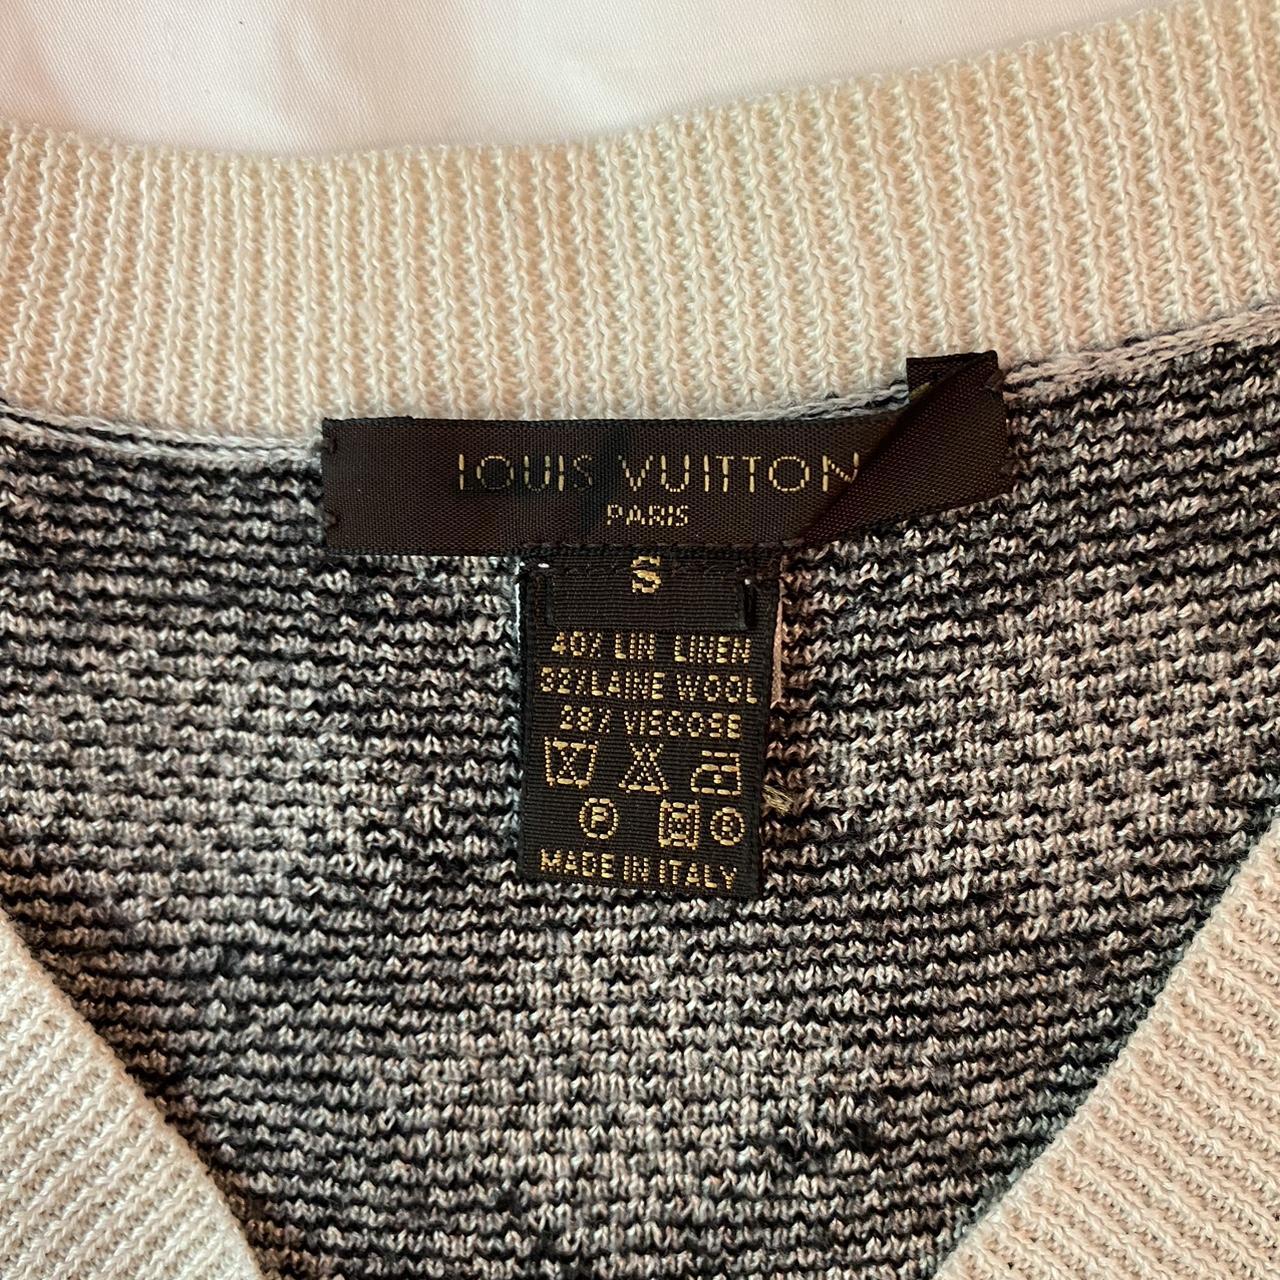 LOUIS VUITTON LOUIS VUITTON Sweater knitwear wool Black Used Women